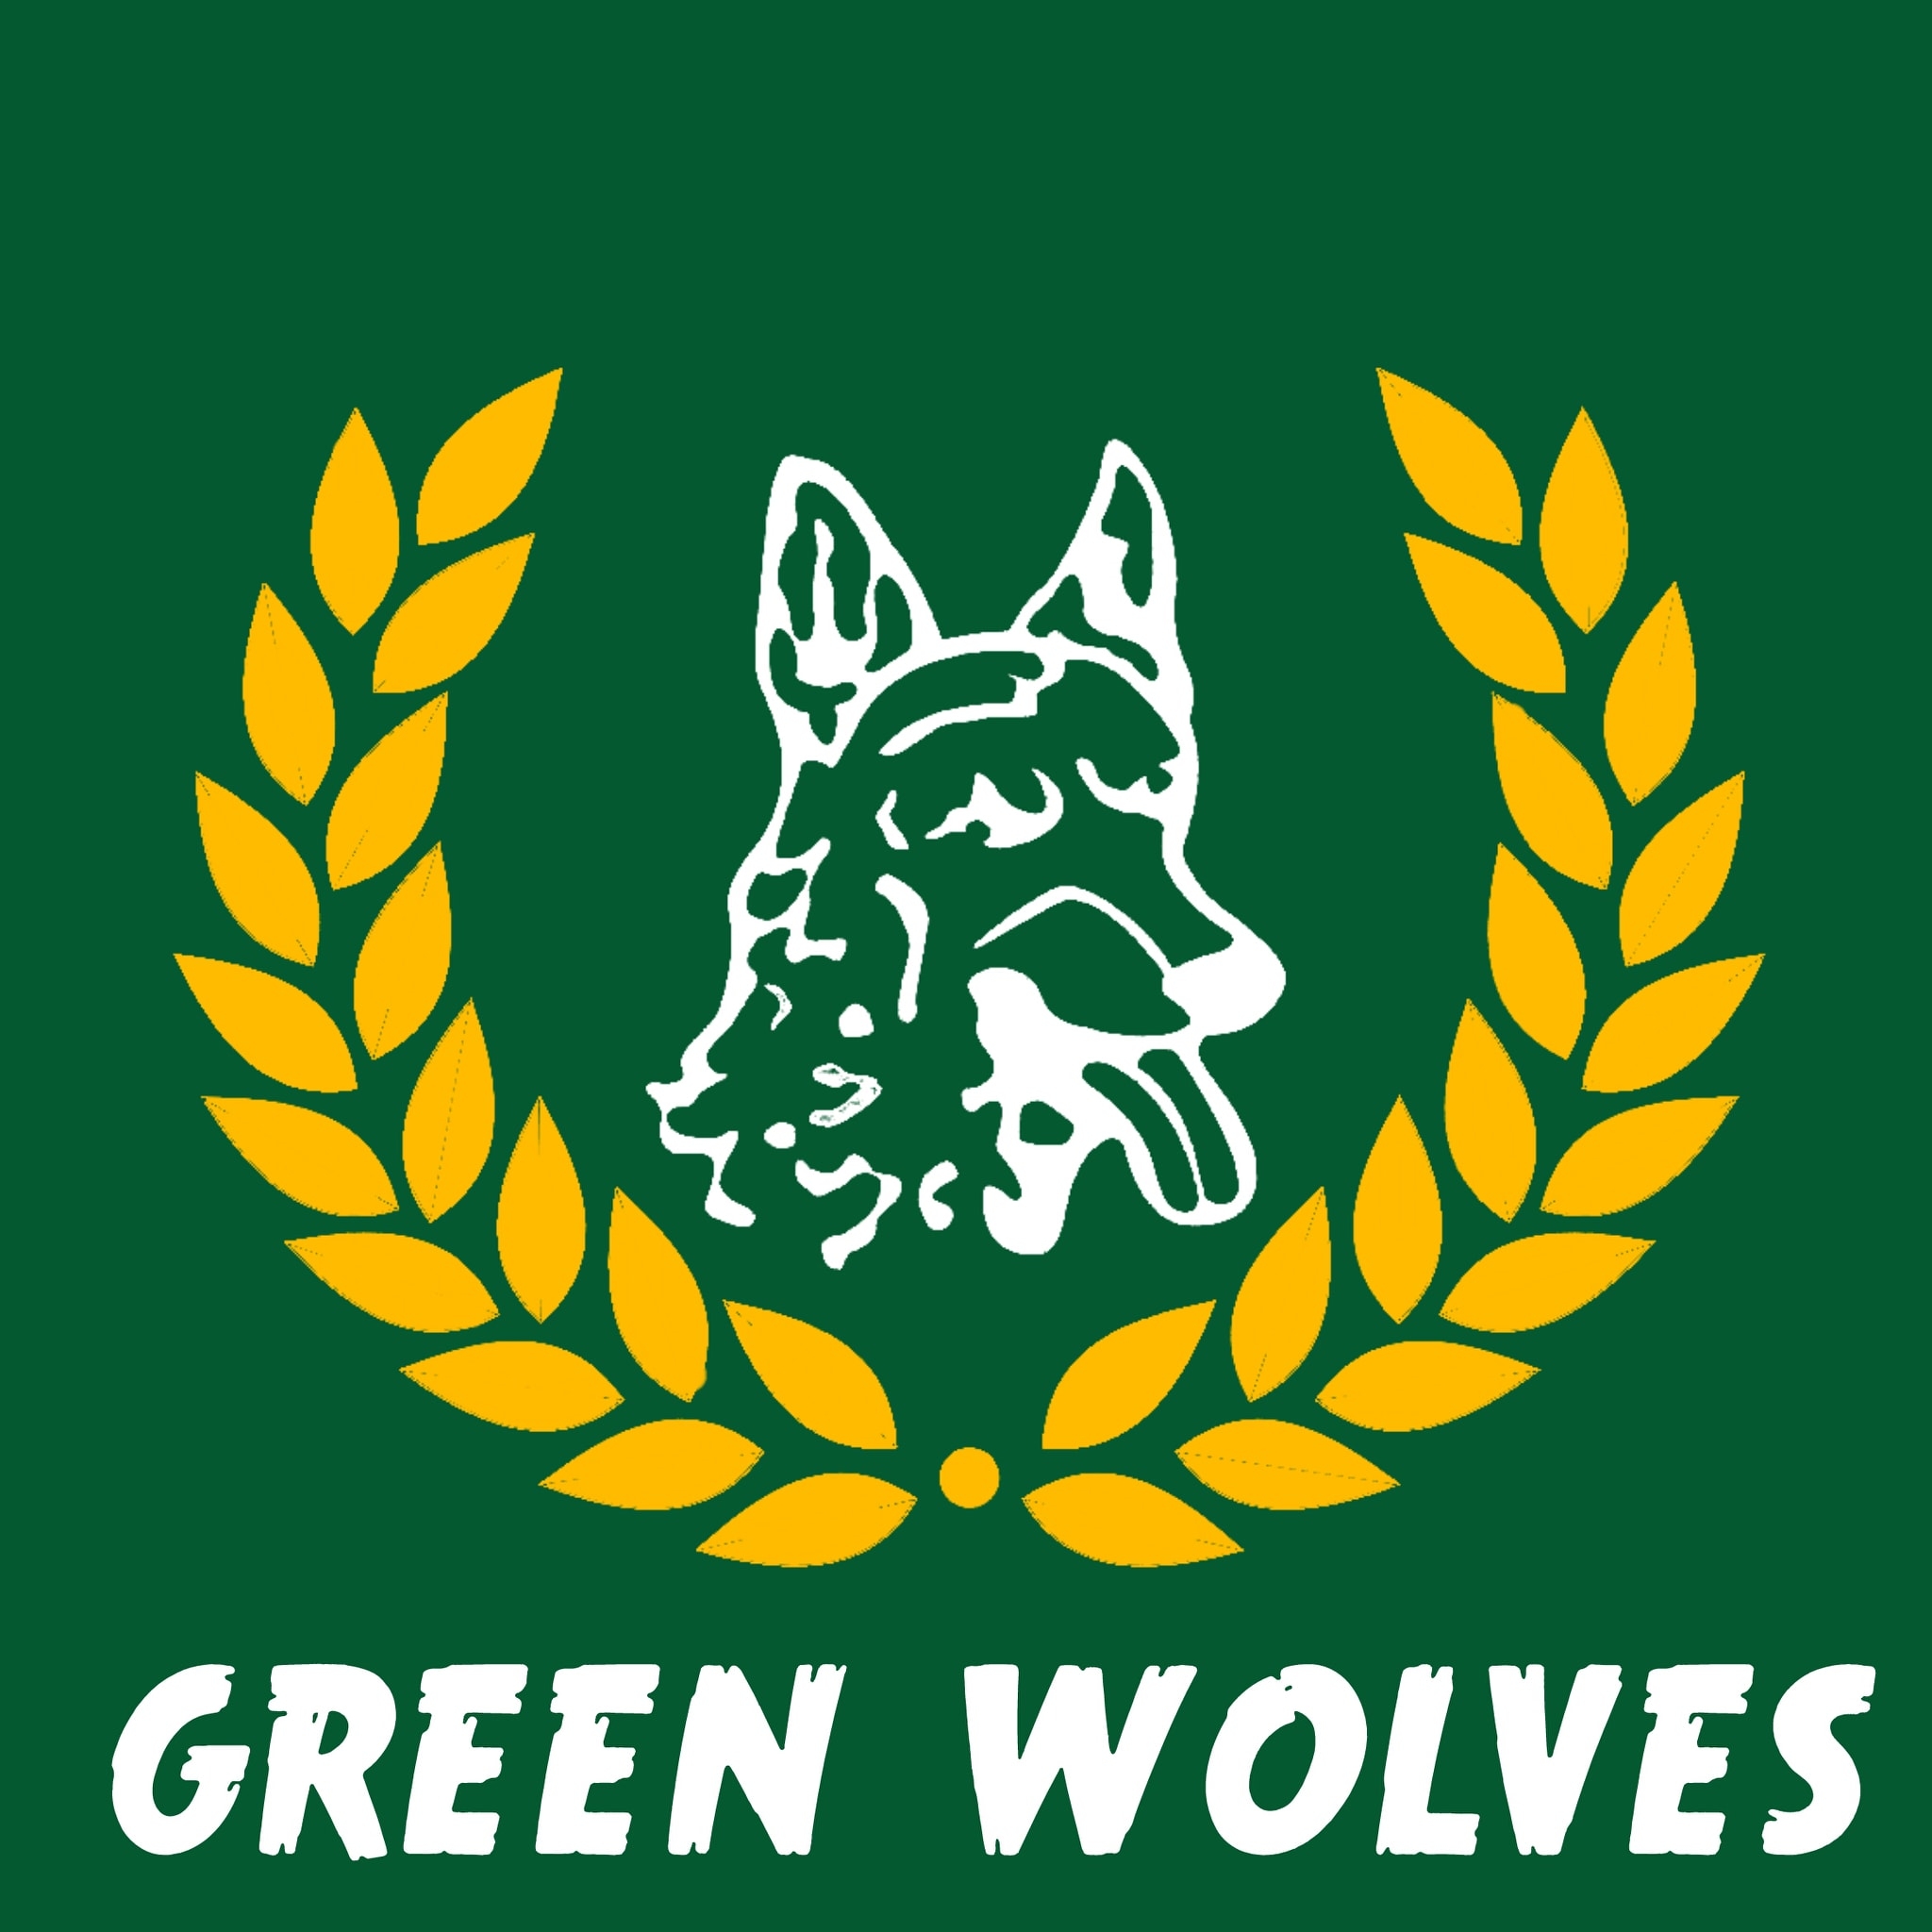 “Η δική του Αναστάση” – Ανακοίνωση από τους Φίλους του Παναργειακού “Green Wolves”